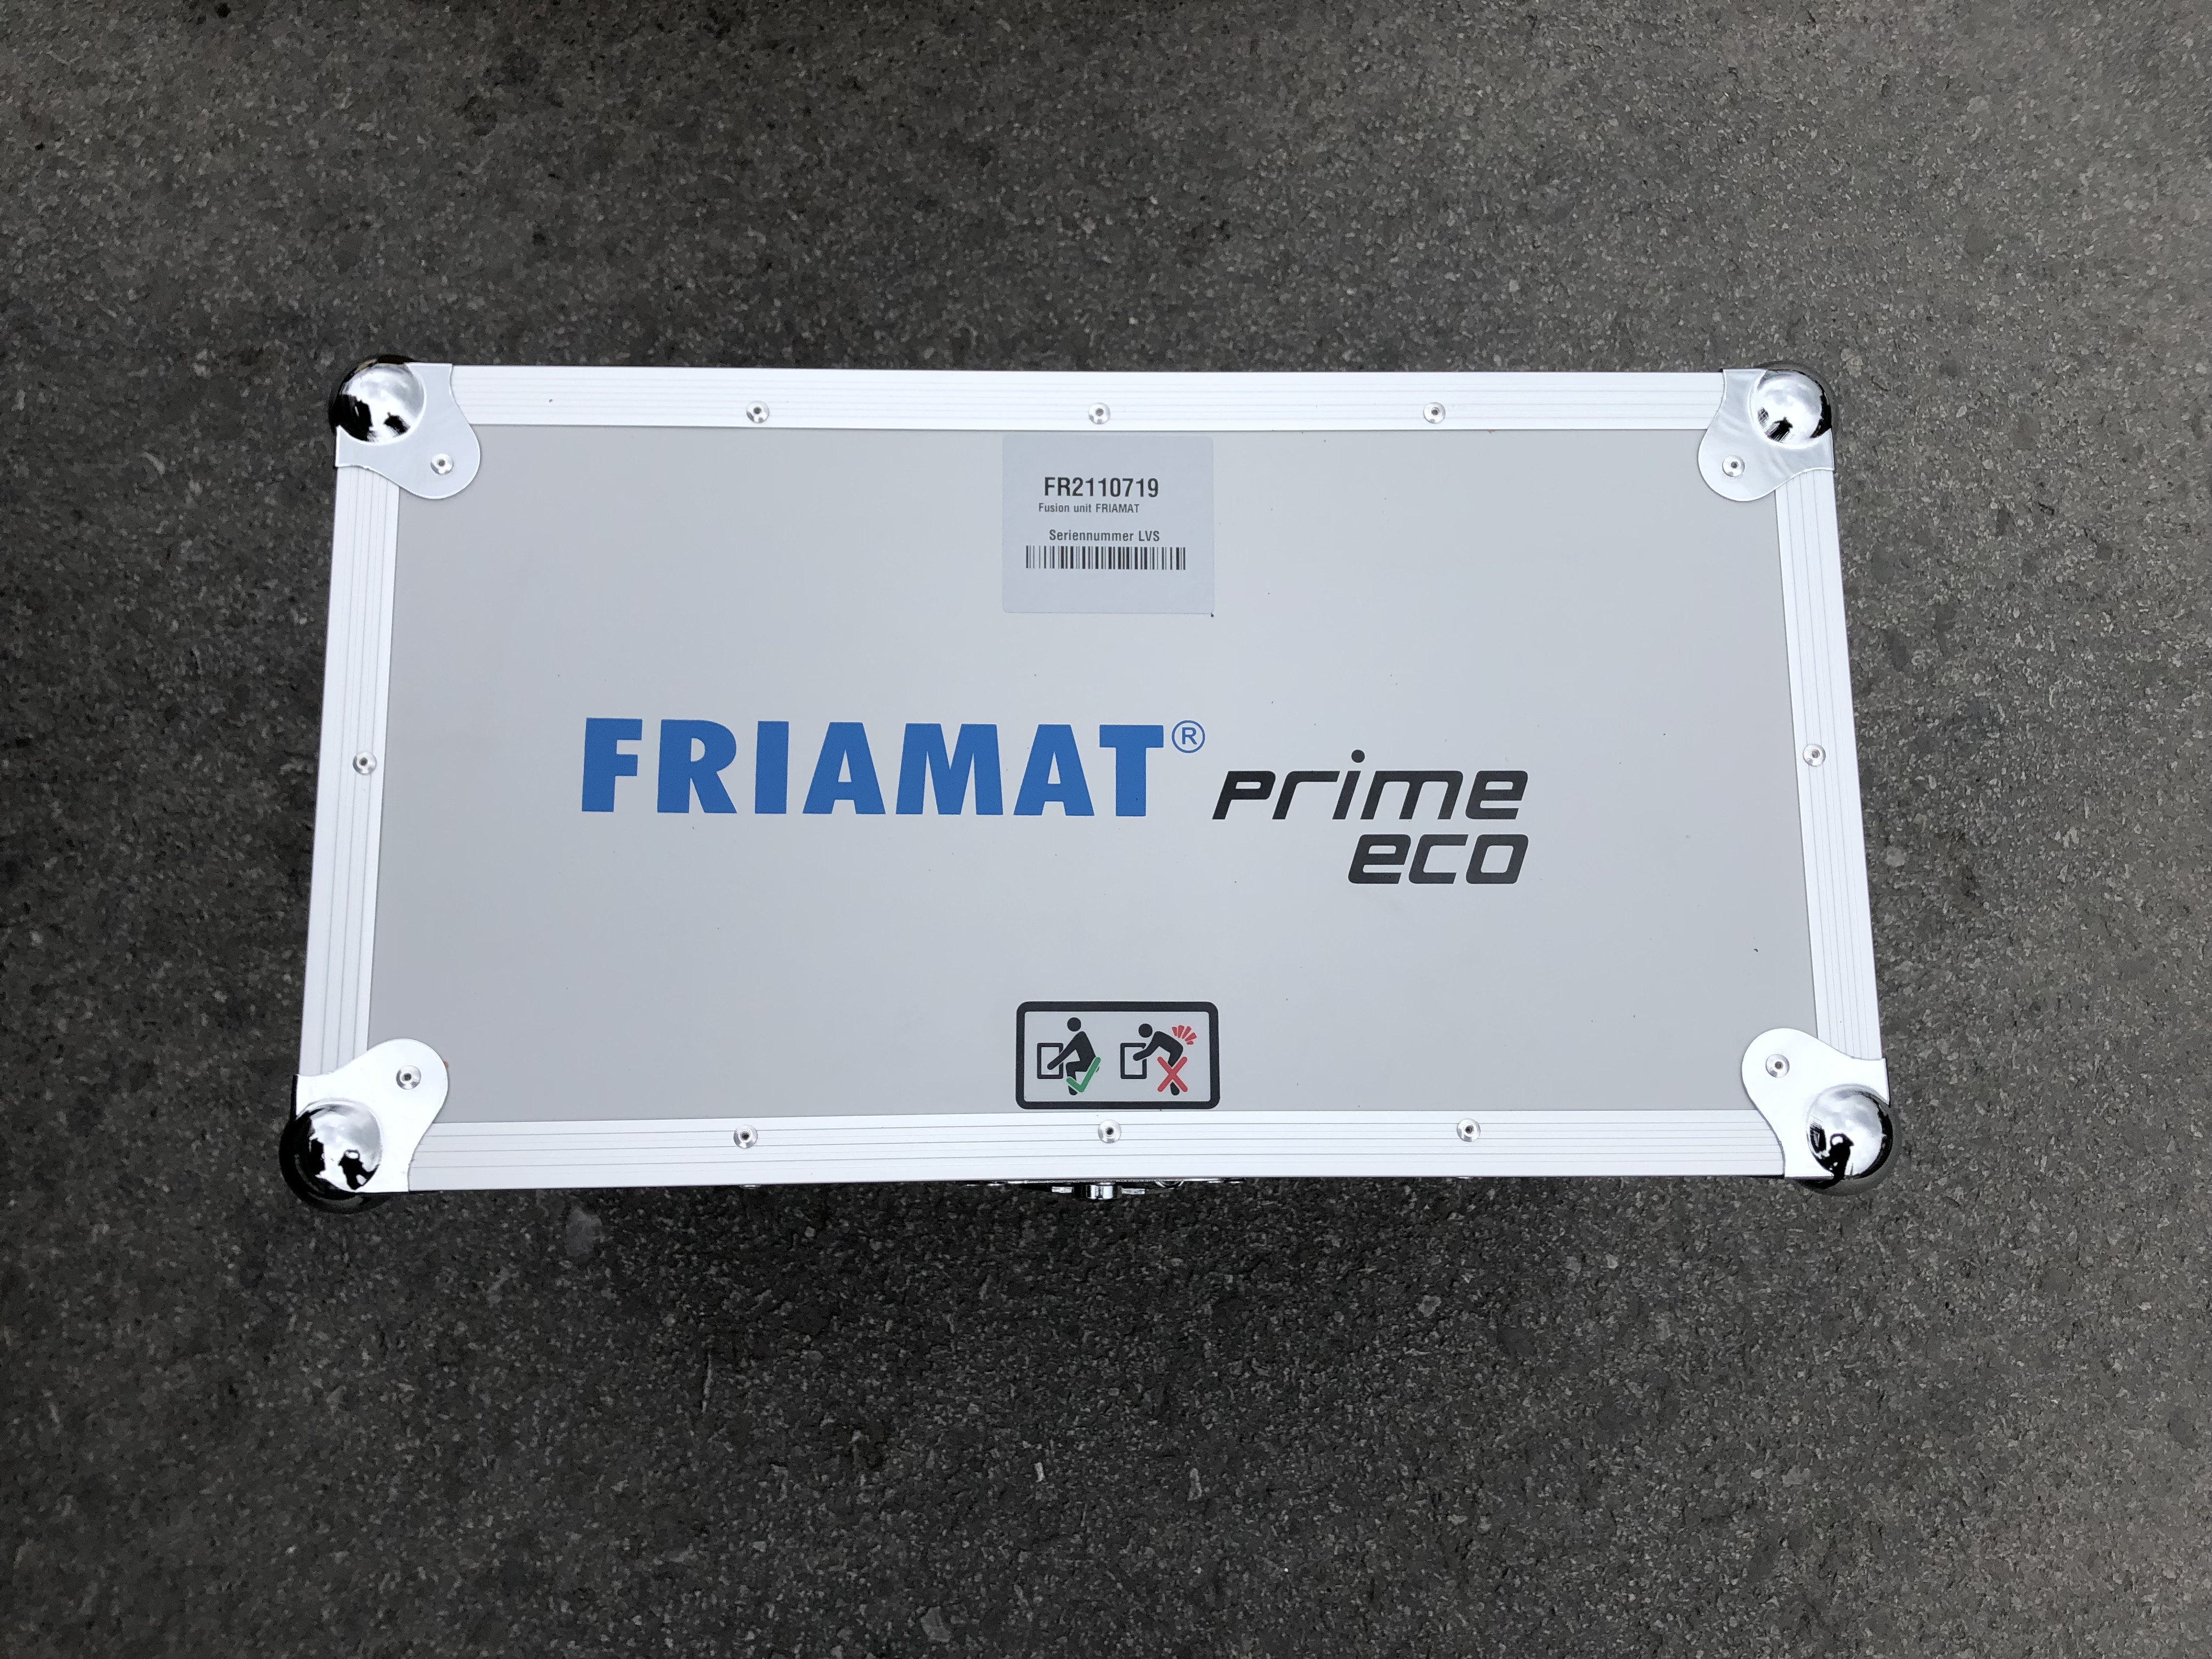 кейс кейса Friamat Prime Eco new